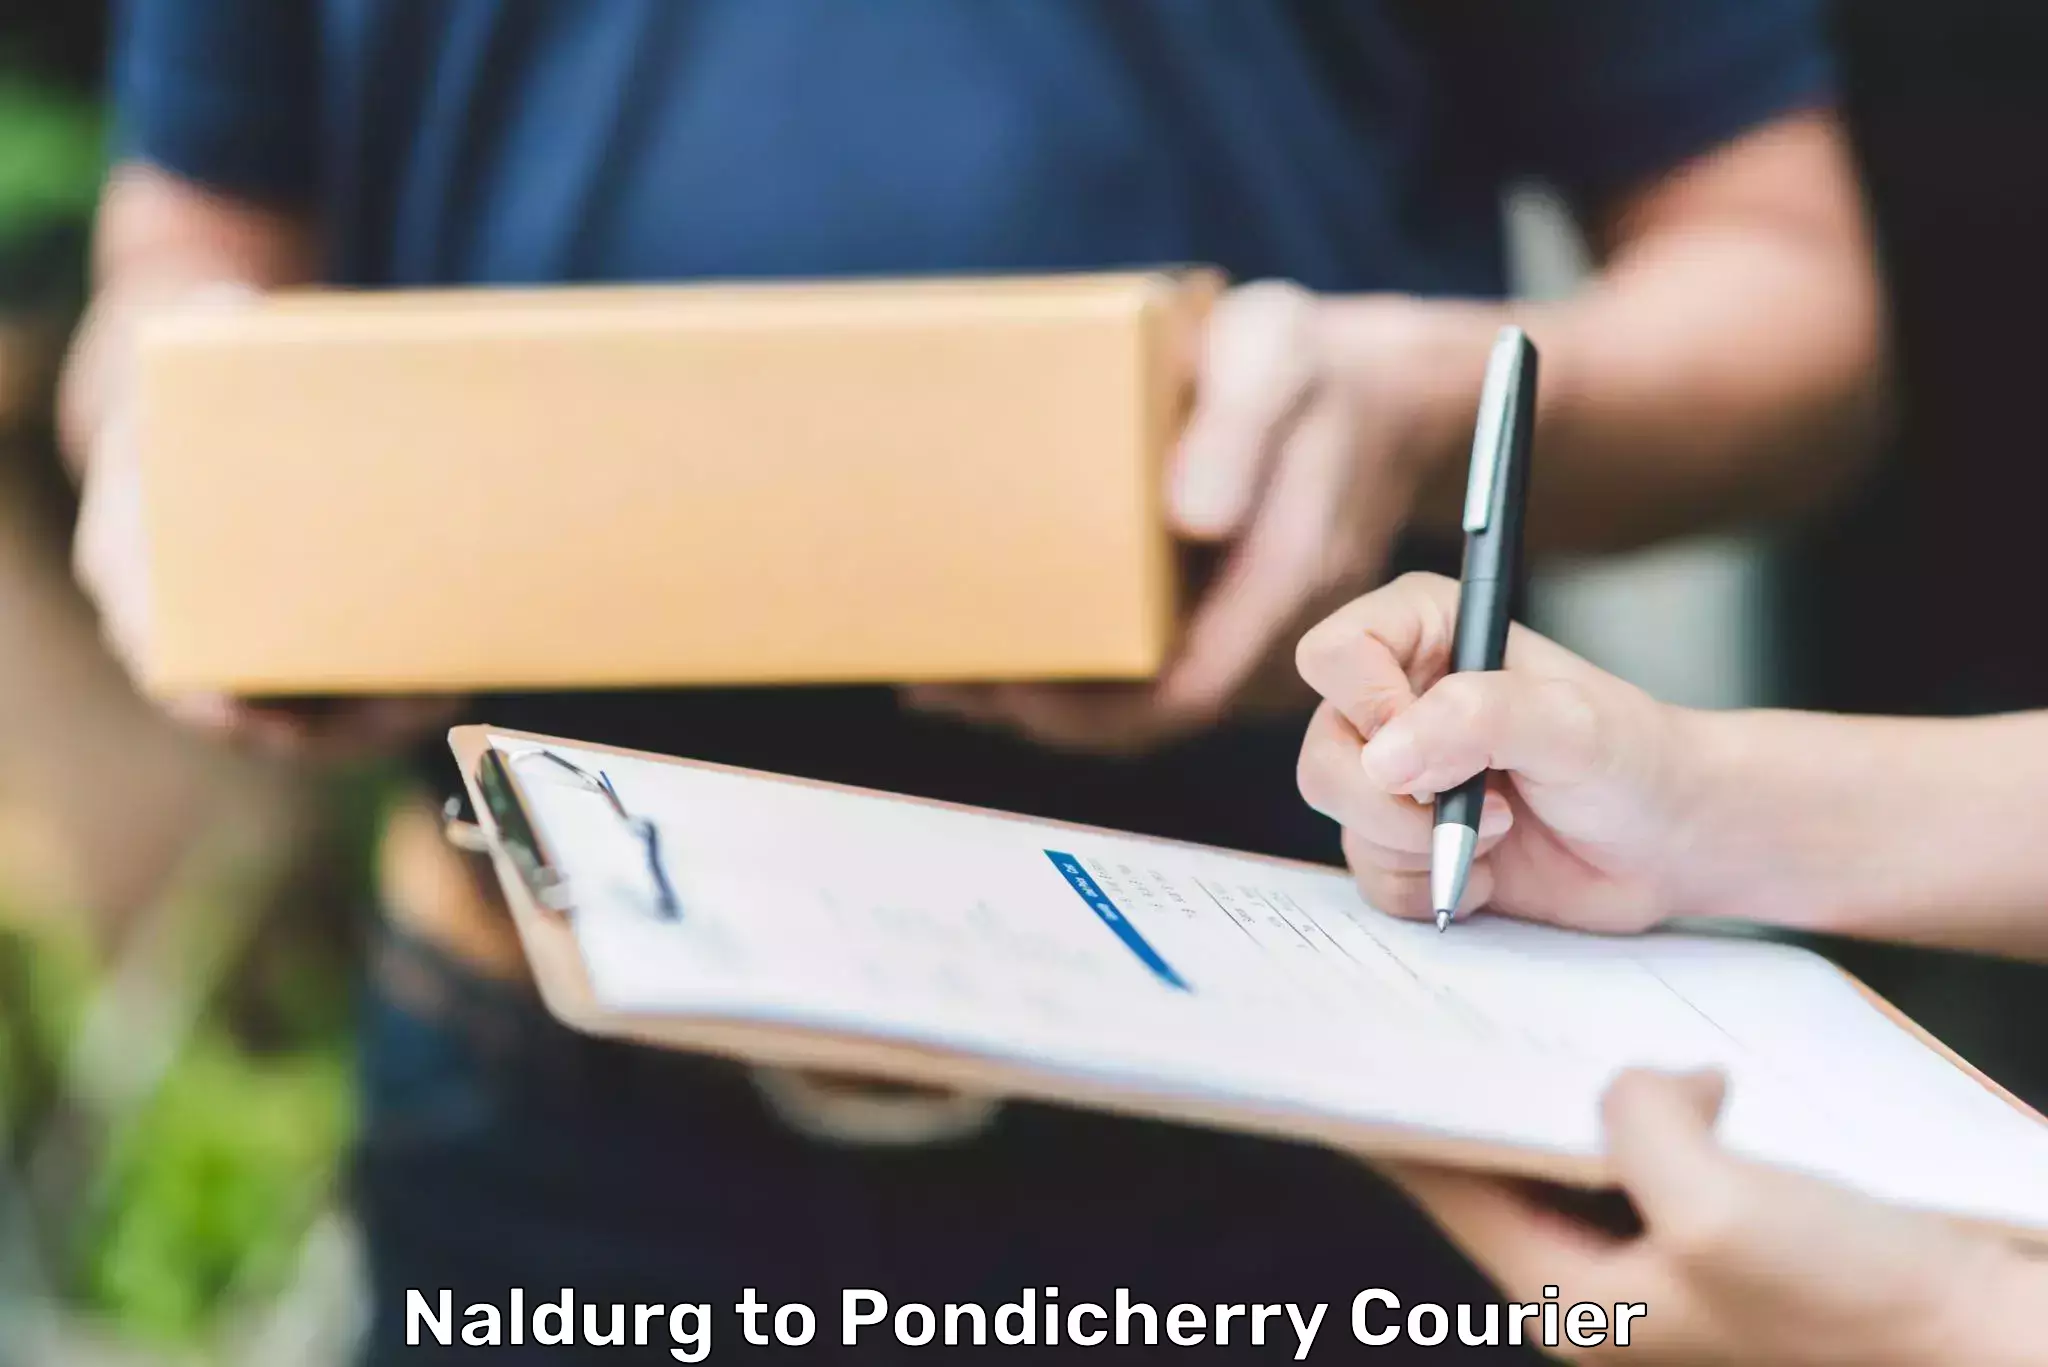 Fast delivery service Naldurg to Pondicherry